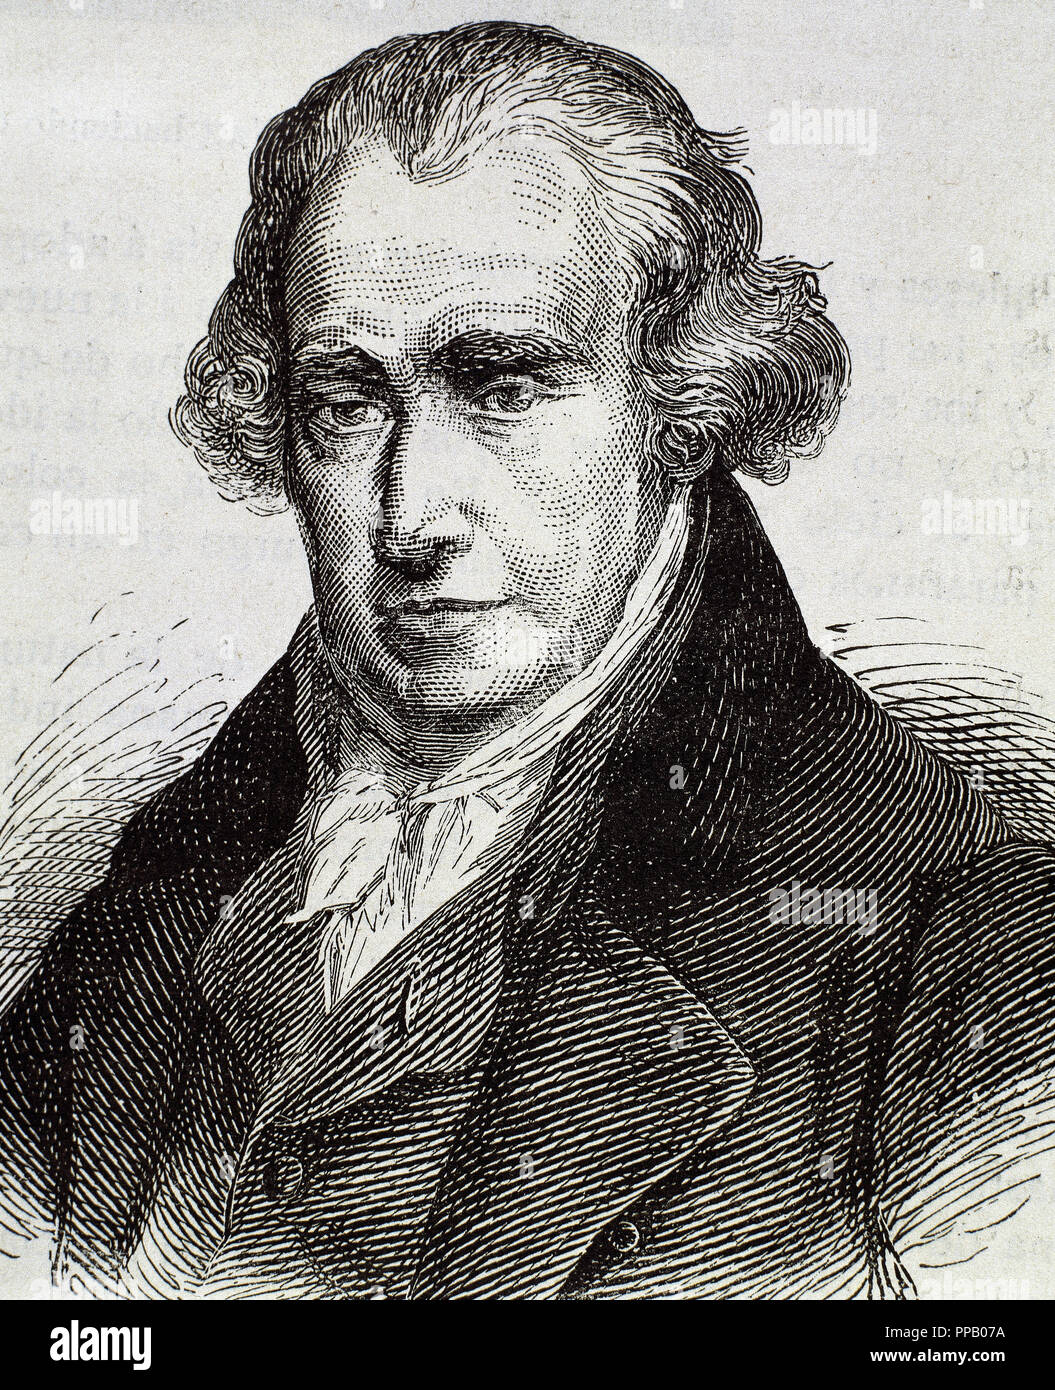 WATT, James (1736-Greenok Heathfield, 1819). L'inventeur écossais et ingénieur en mécanique. Gravure du xixe siècle. Banque D'Images